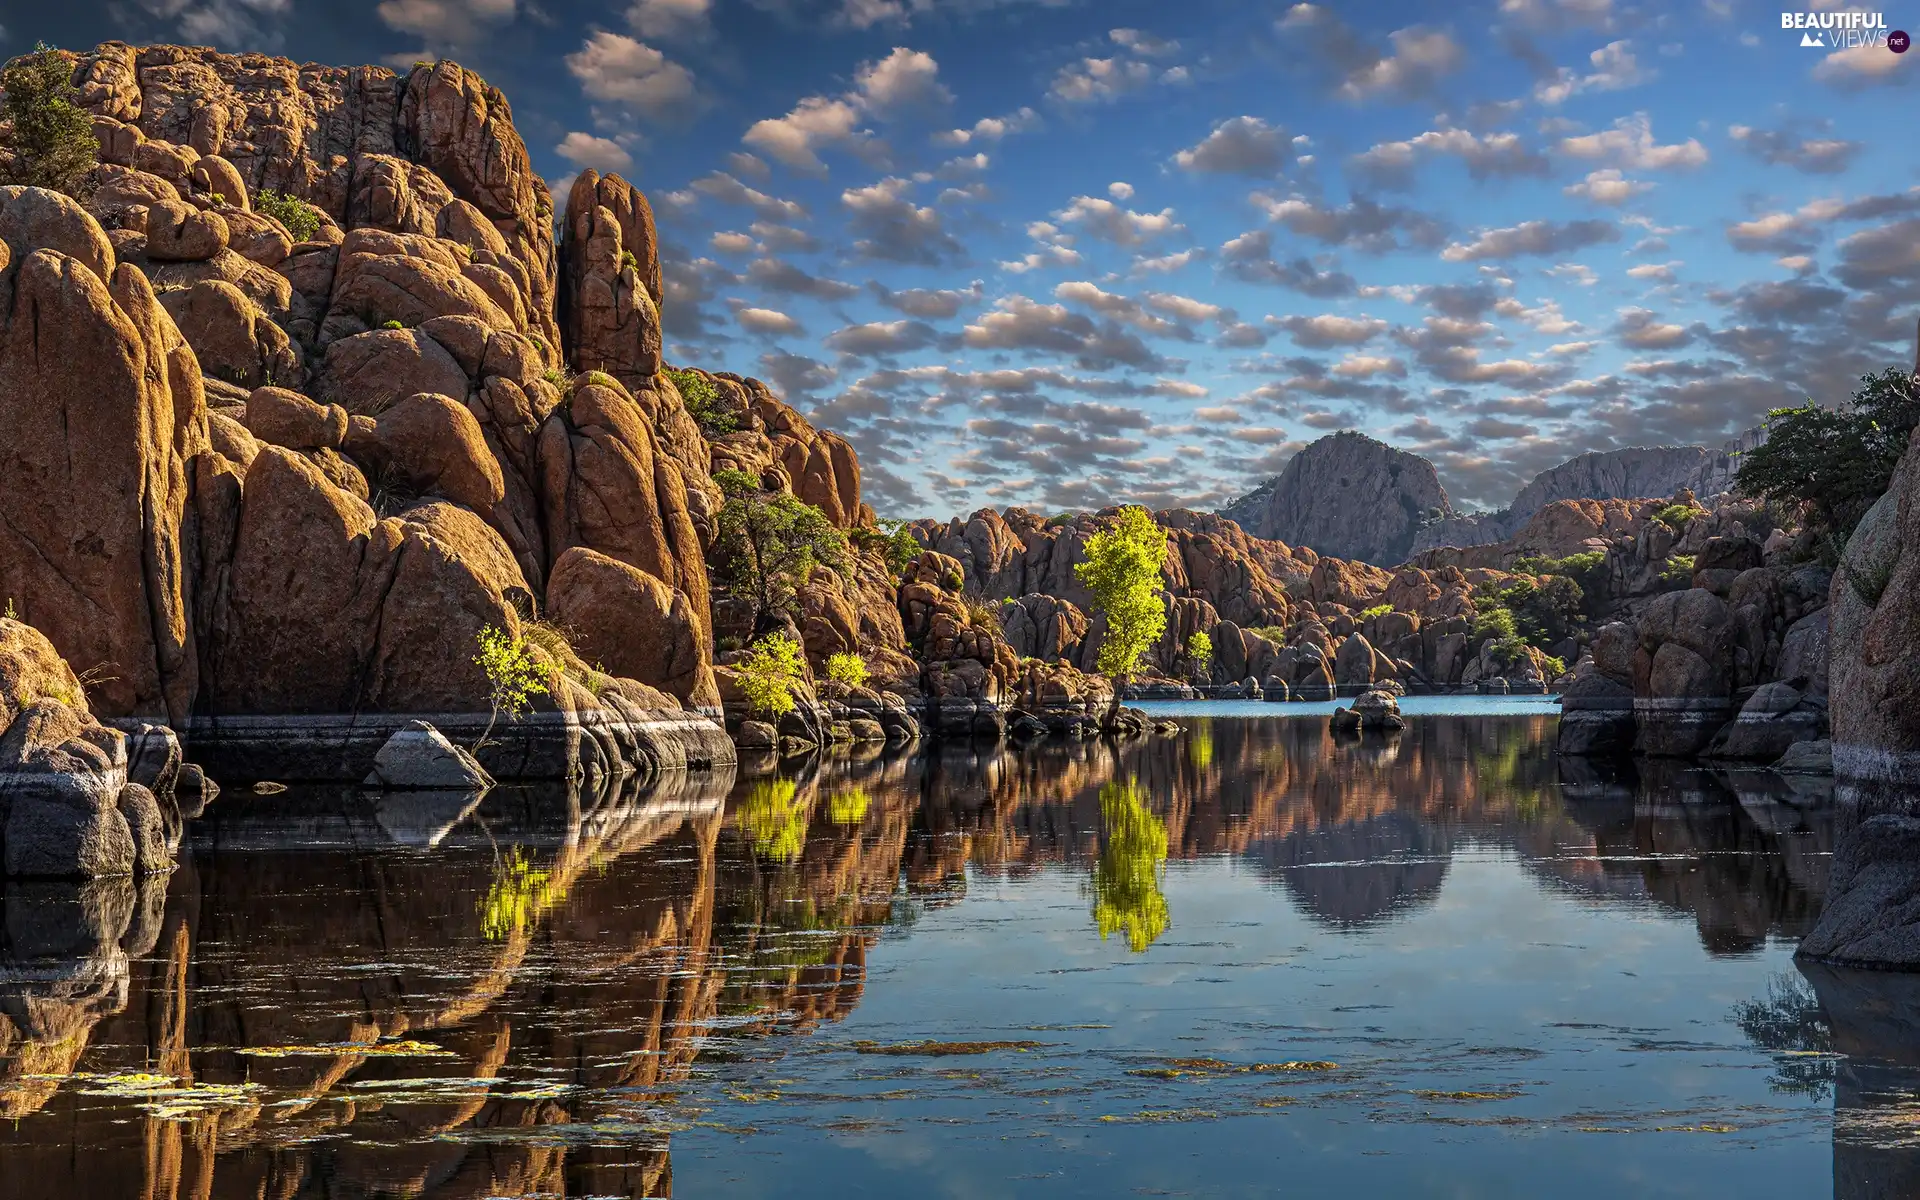 Plants, reflection, Mountains, rocks, lake